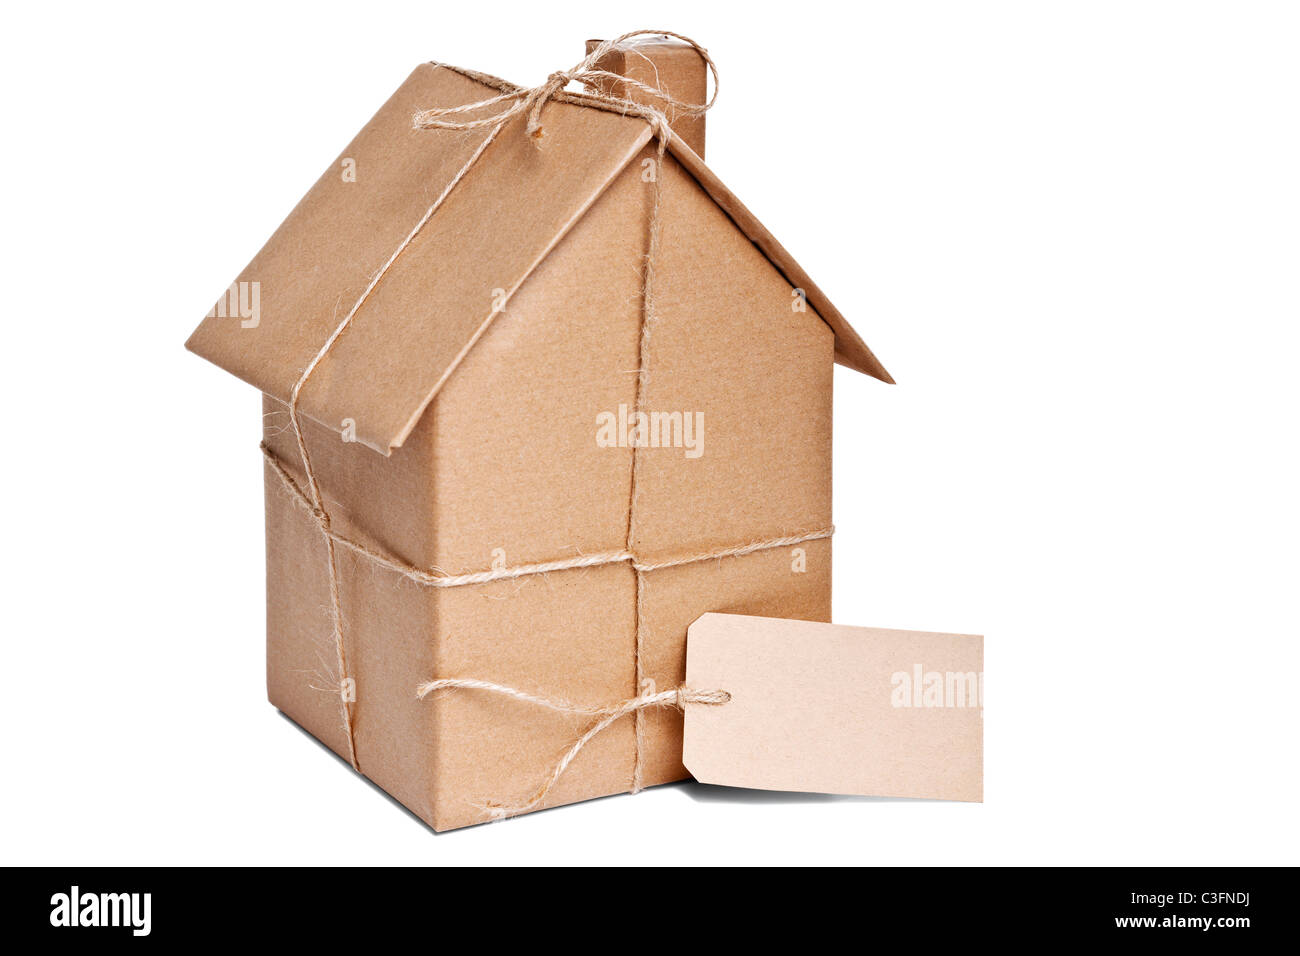 Foto di una casa avvolta in carta riciclata marrone con etichetta, ritagliata su uno sfondo bianco. Foto Stock